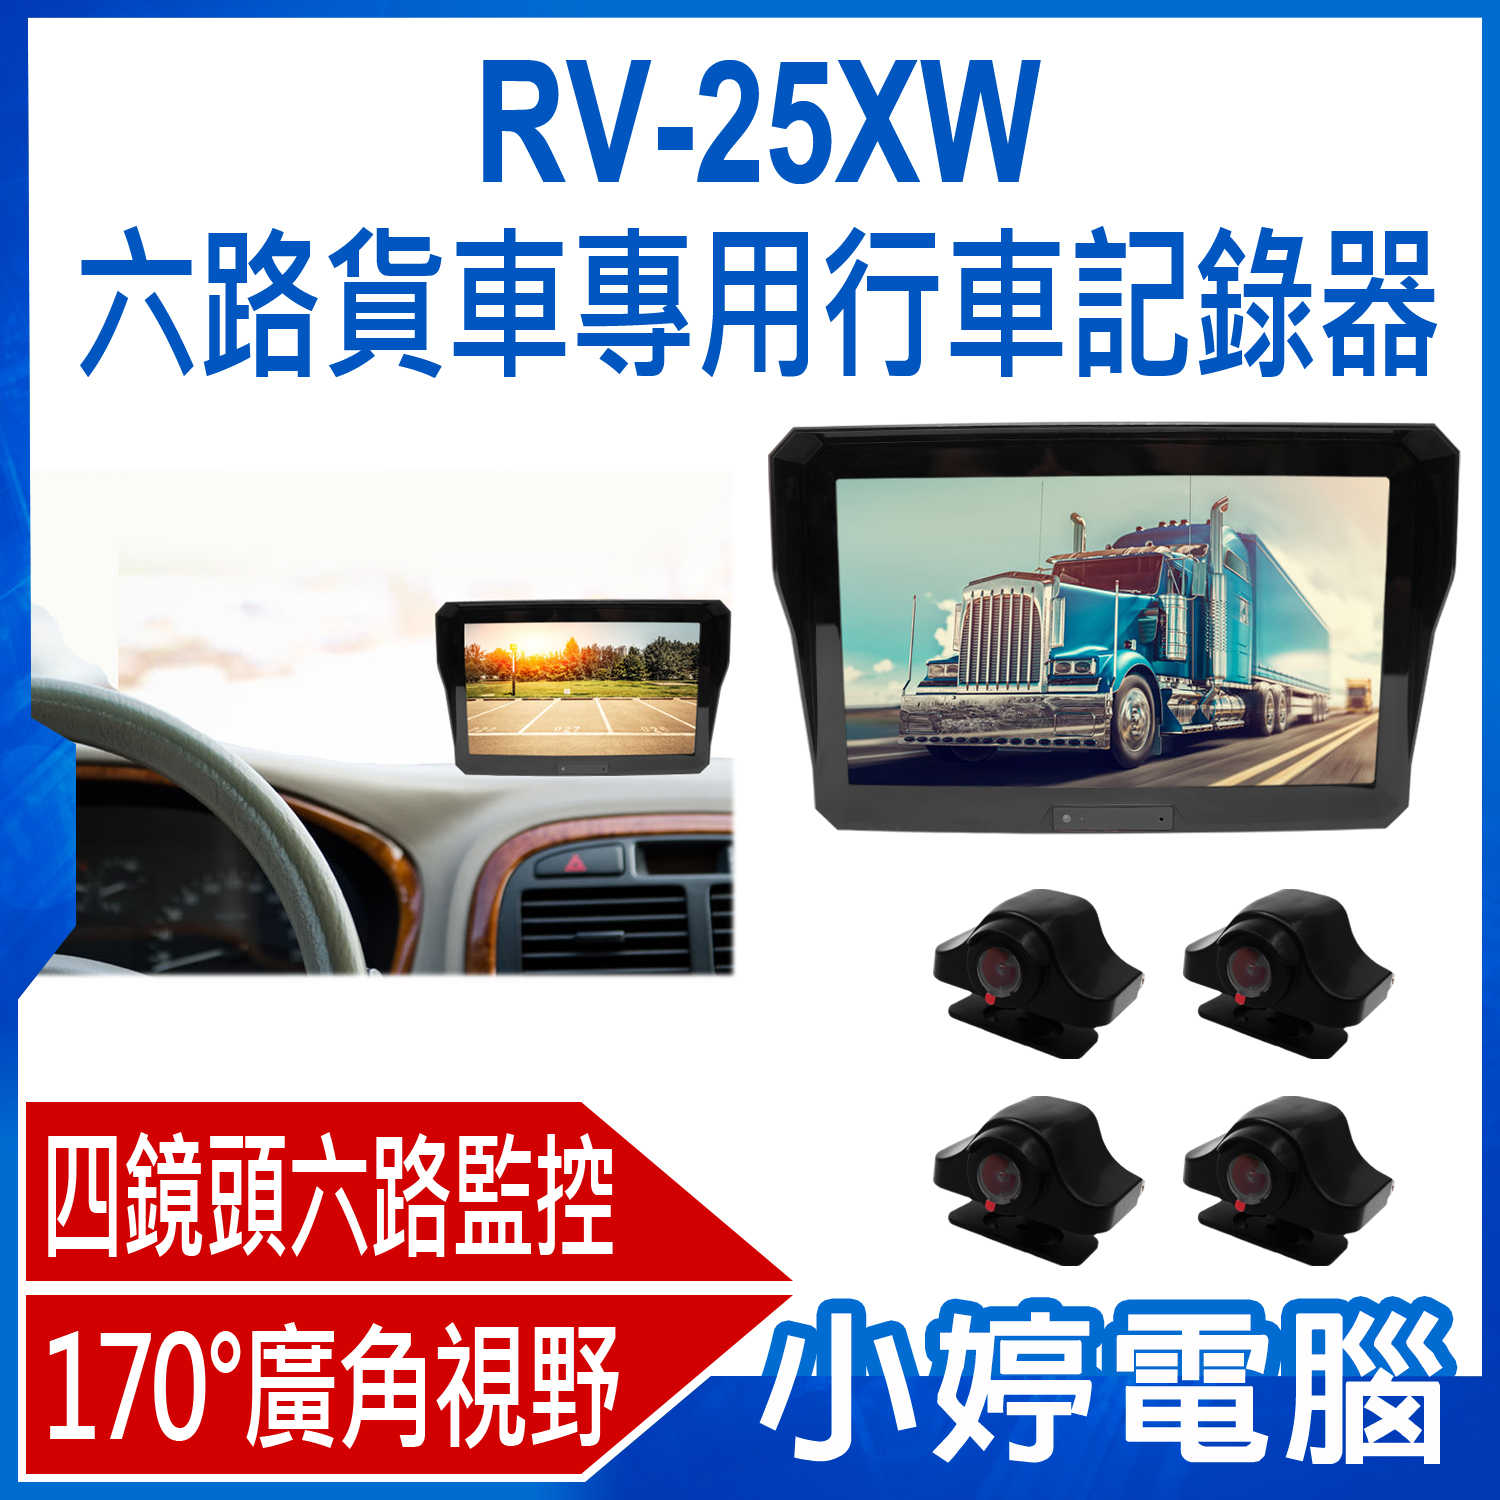 【小婷電腦】RV-25XW 六路貨車專用行車記錄器 10吋螢幕 四鏡頭六路監控 170°廣角 倒車後視